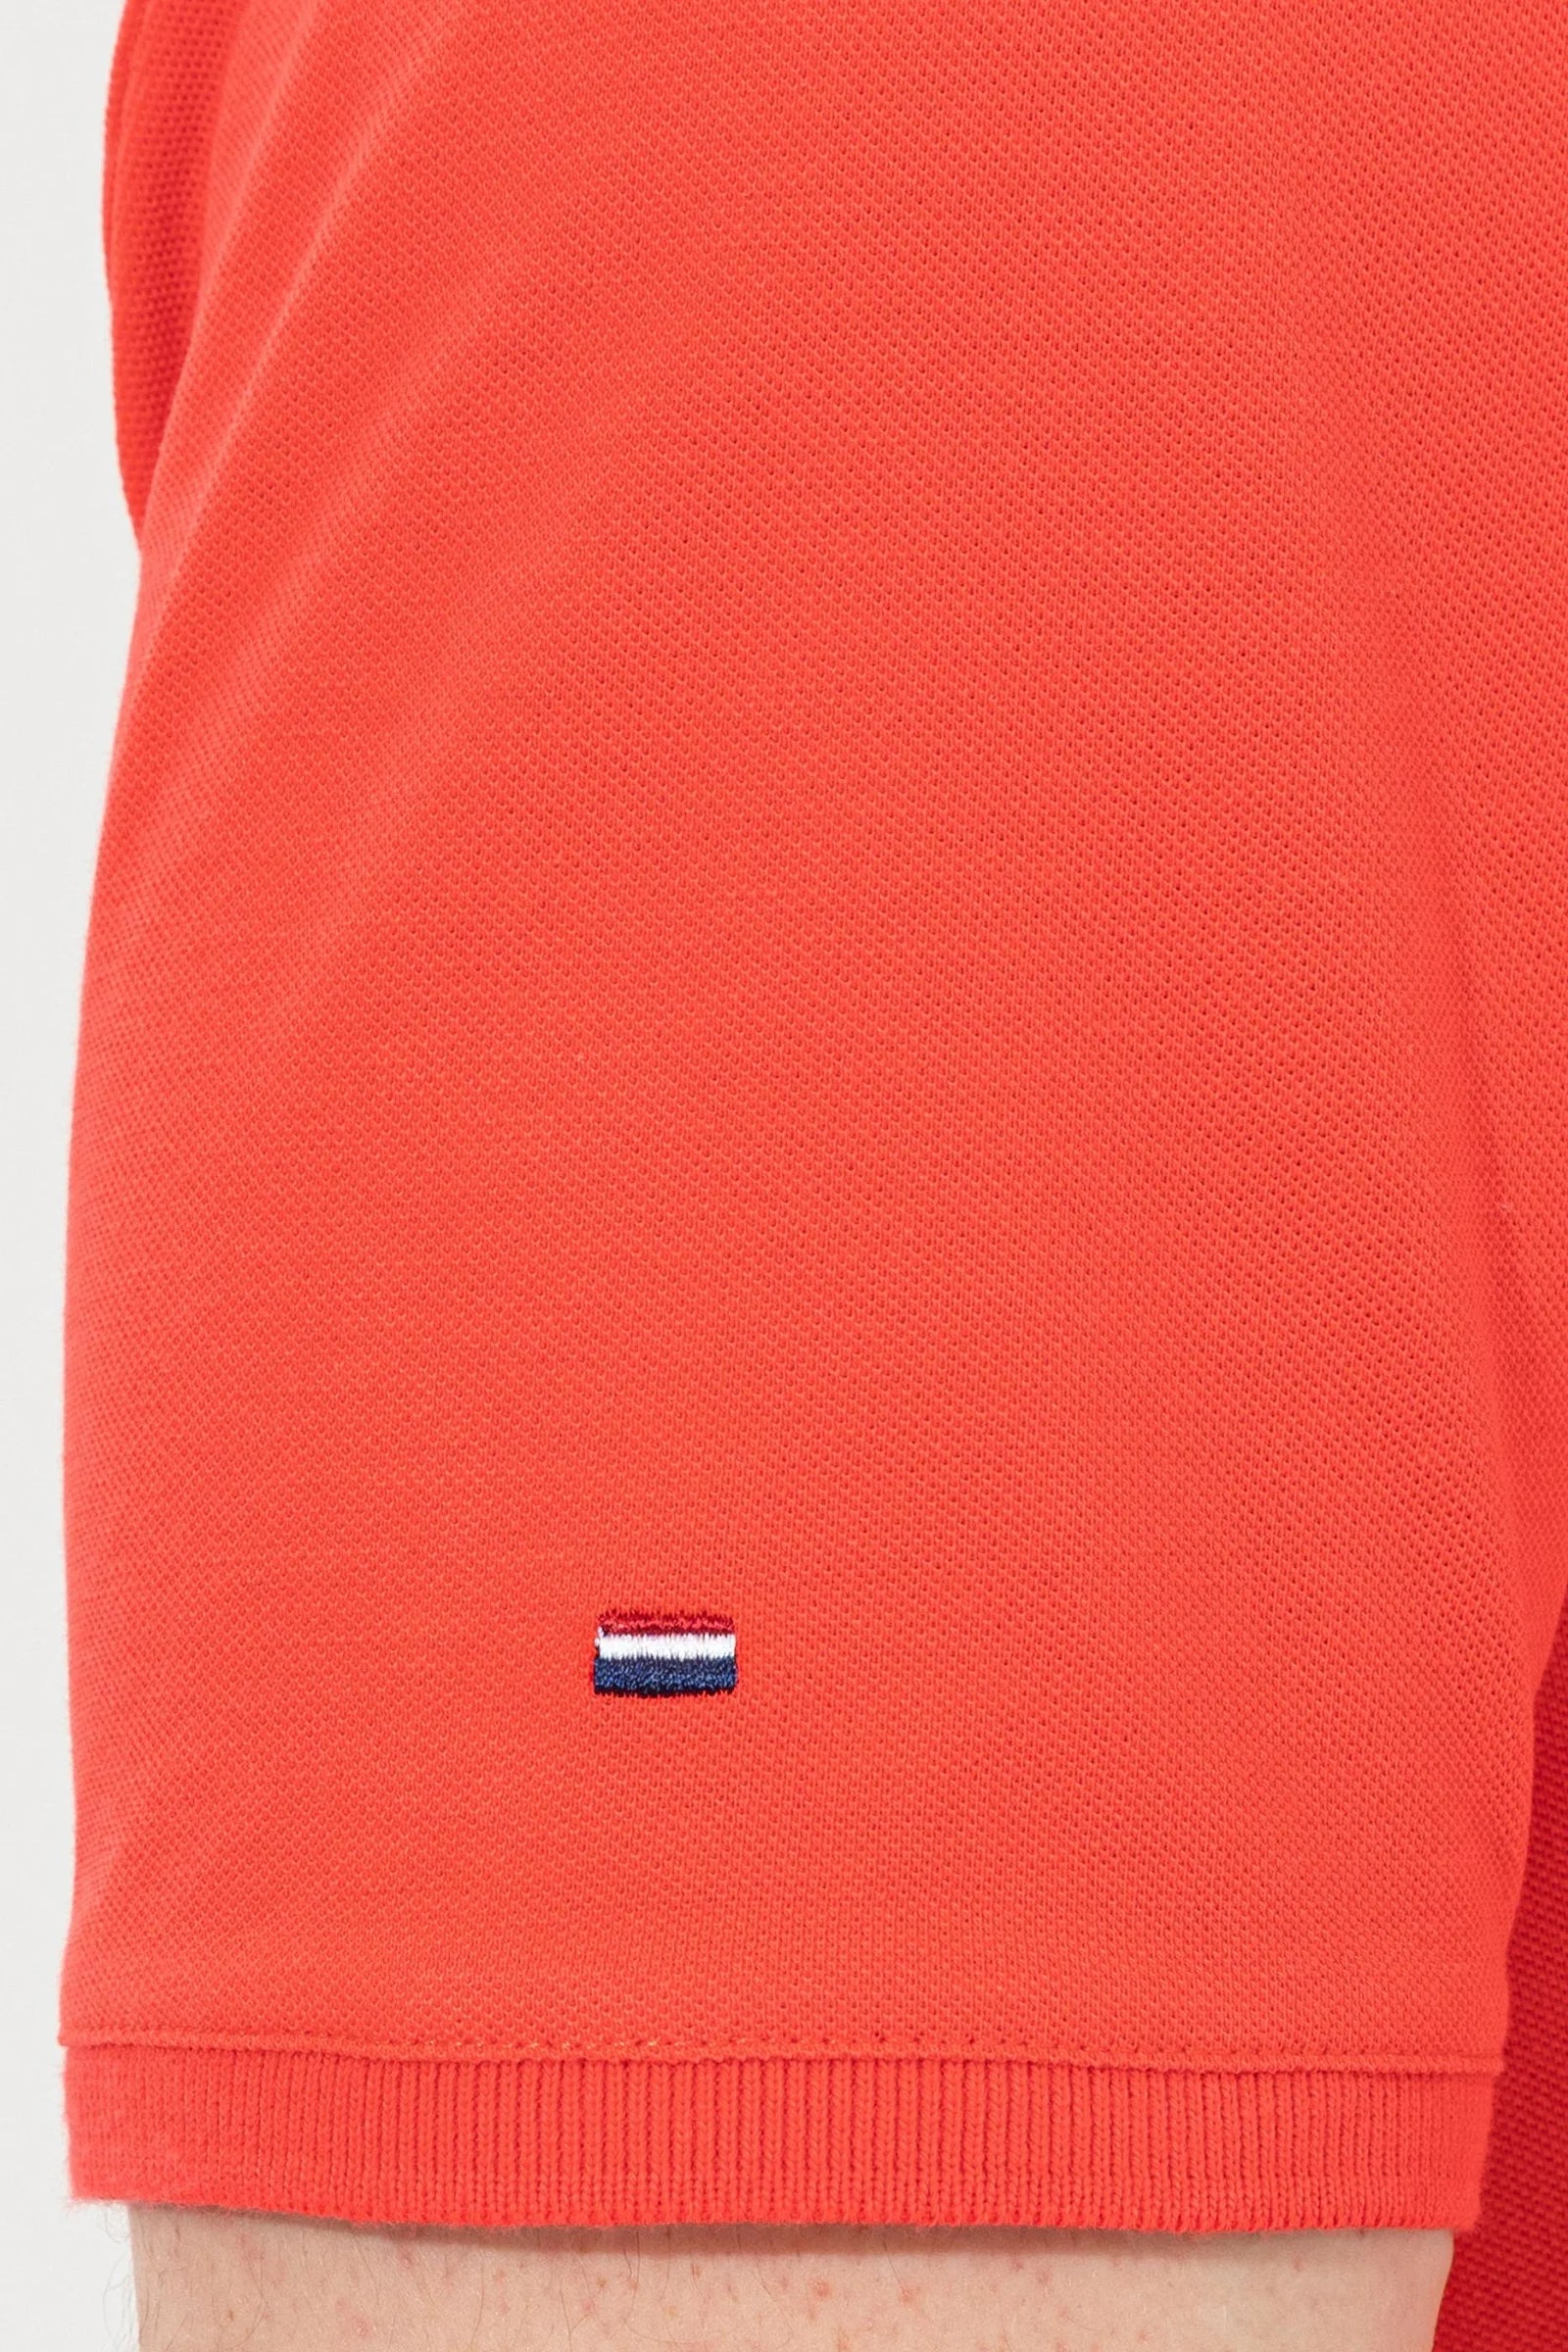 US Polo Assn. USPA Logo Polo Neck T-Shirt Basic - Men